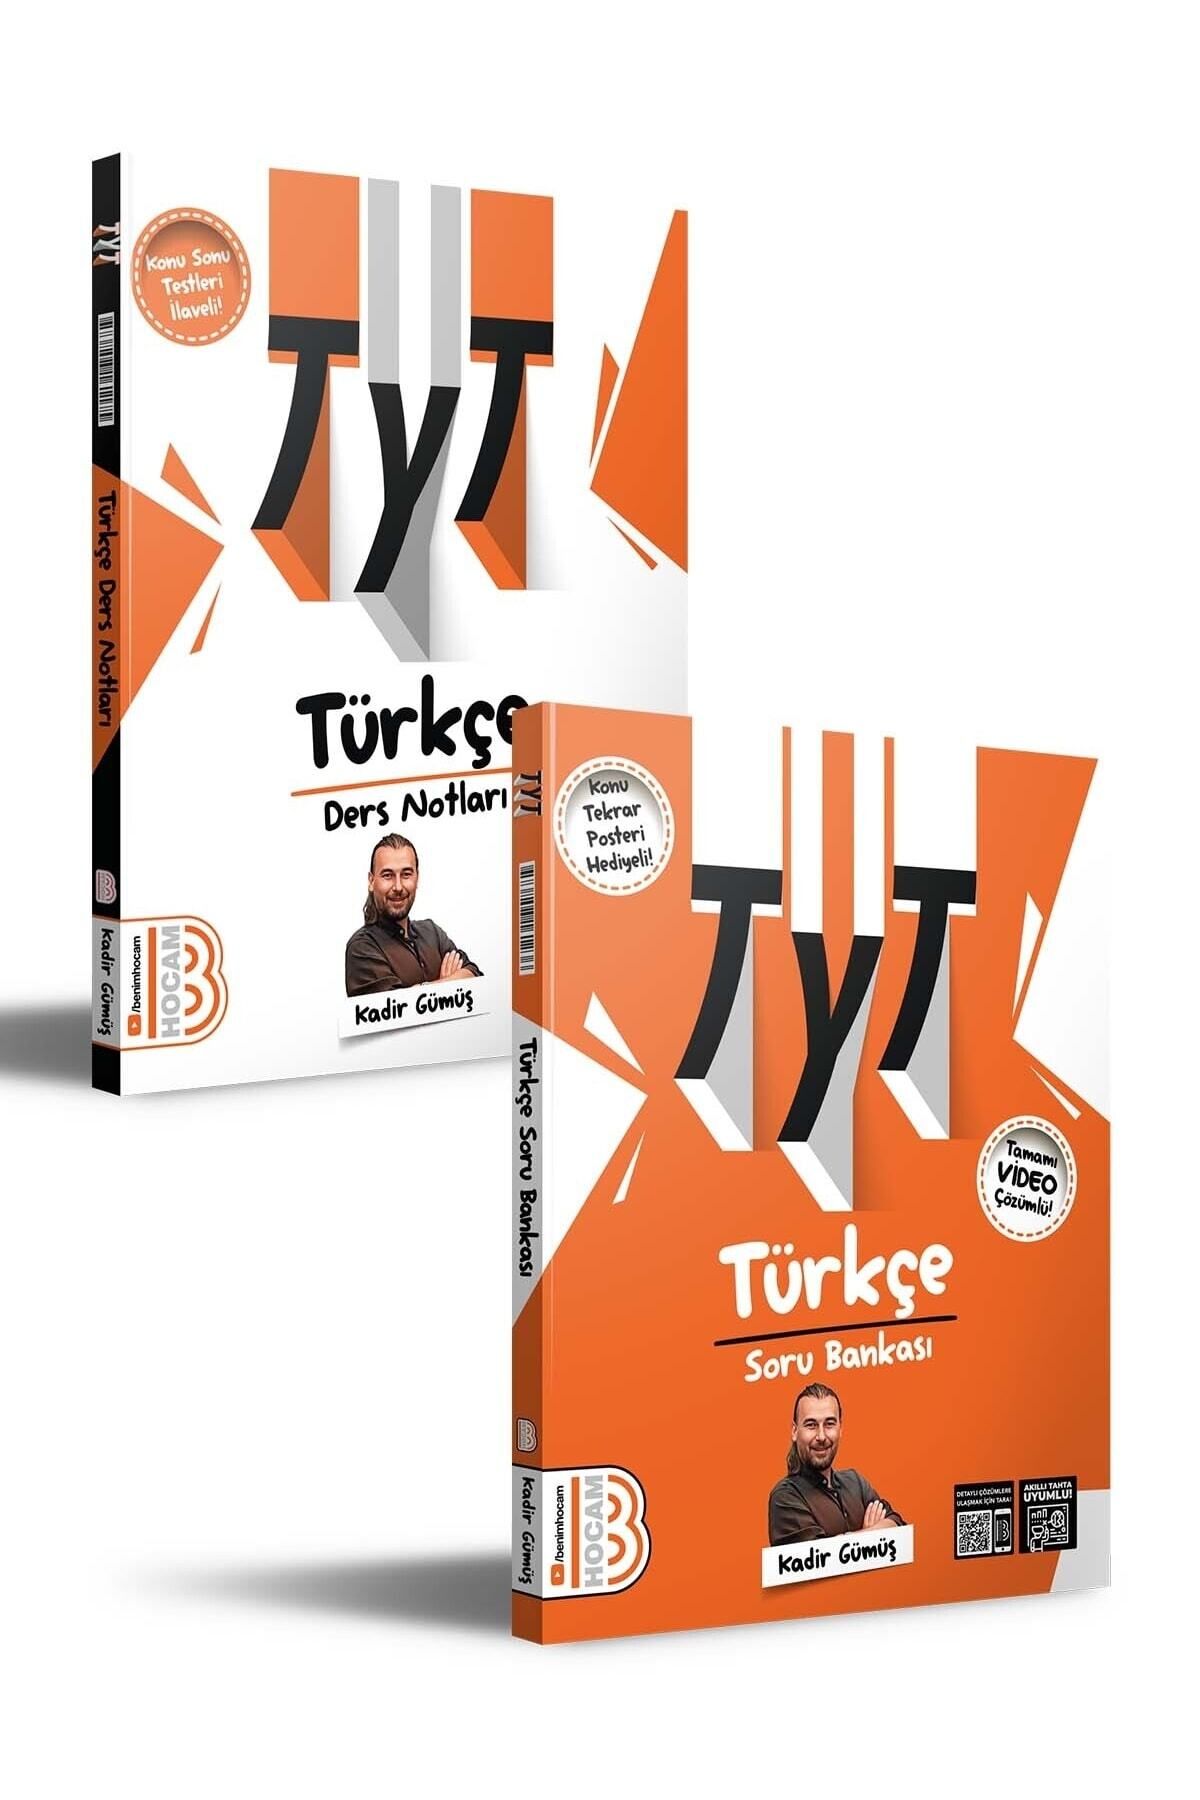 Benim Hocam Yayınları Yks Tyt Türkçe Video Destekli Konu Anlatımı Ders Notları Ve Soru Bankası Seti